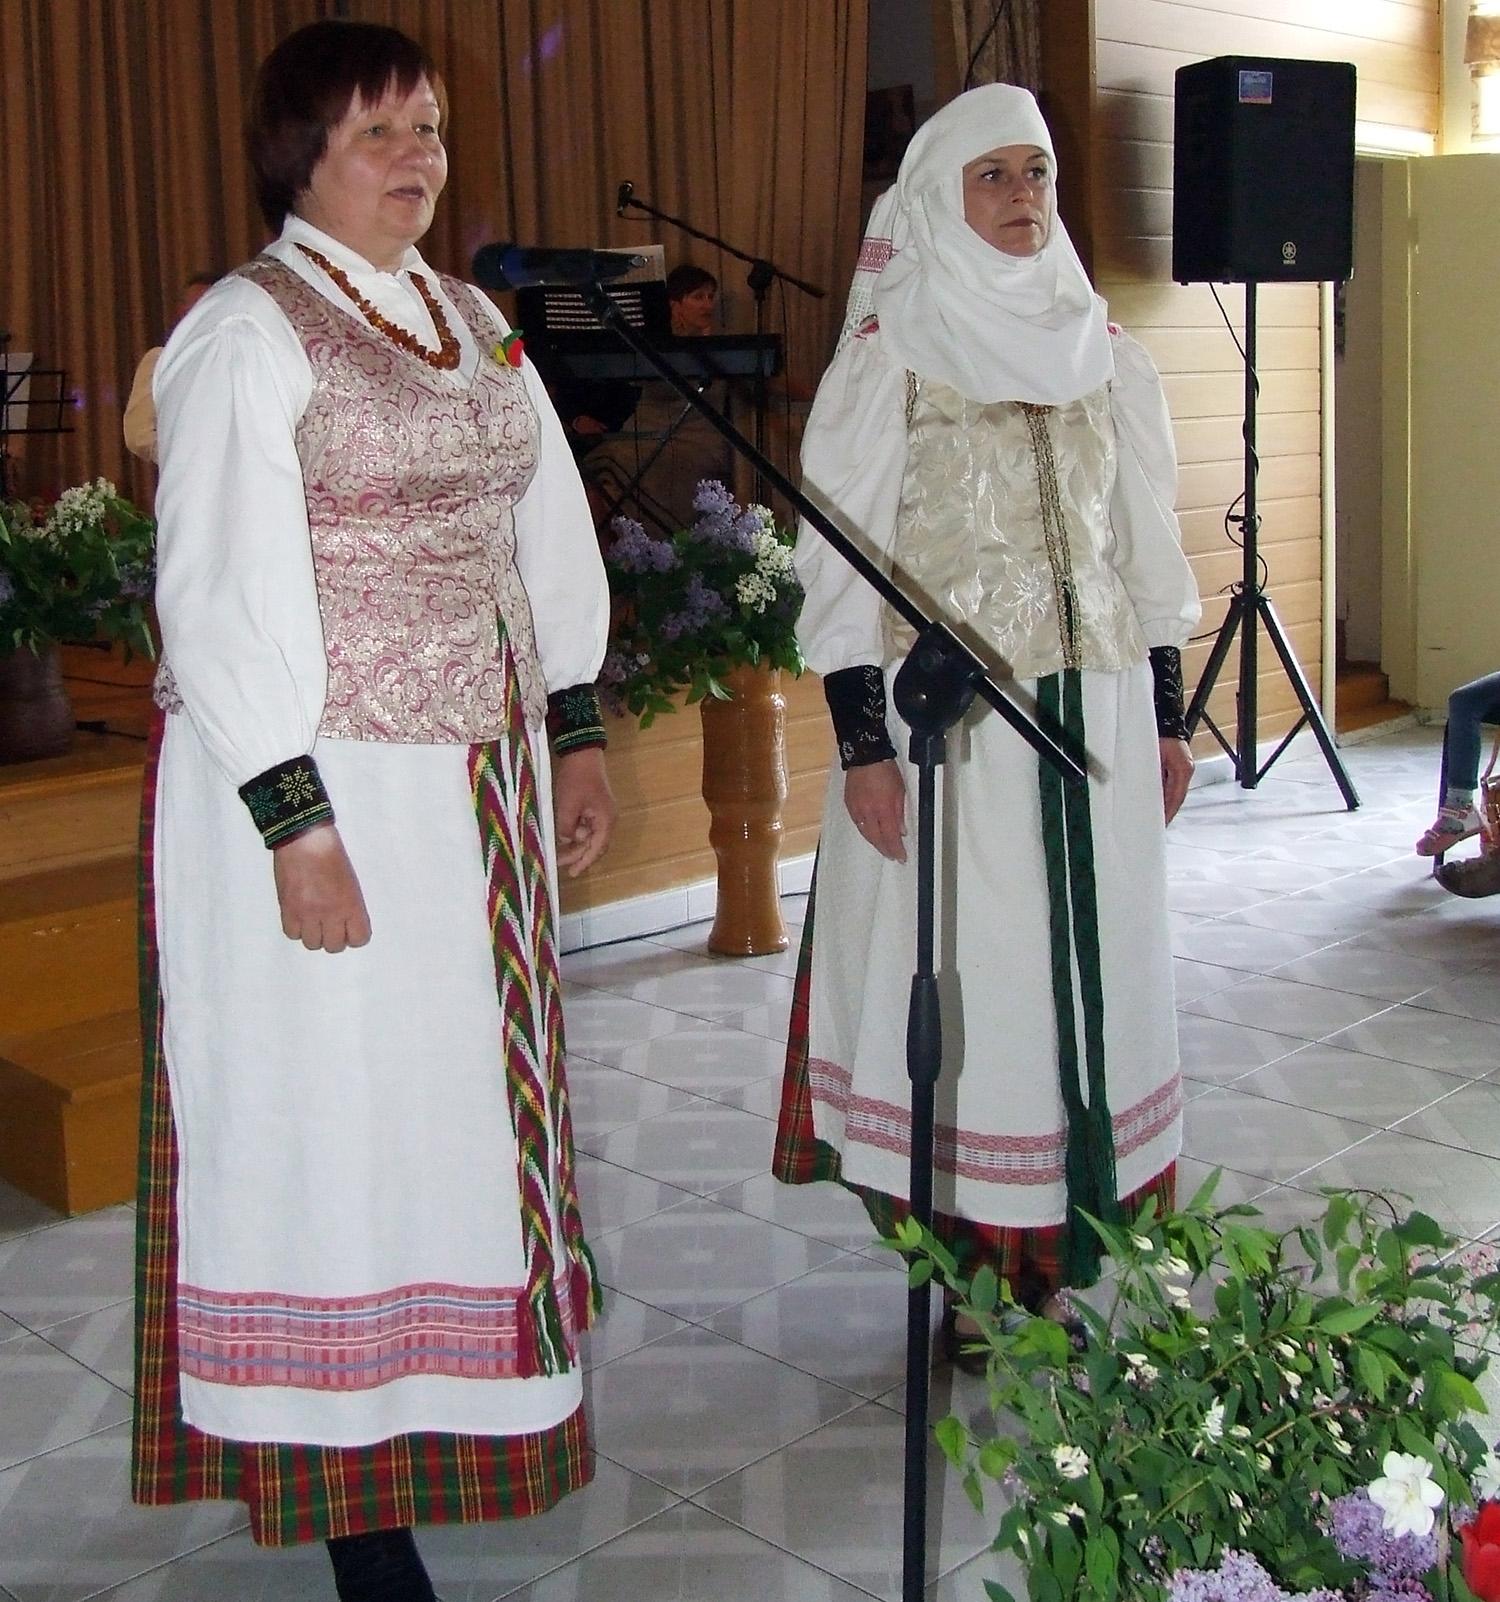 Poezijos šventę skyrėme Lietuvai / Šventėje pristatytas ir tautinis kostiumas.